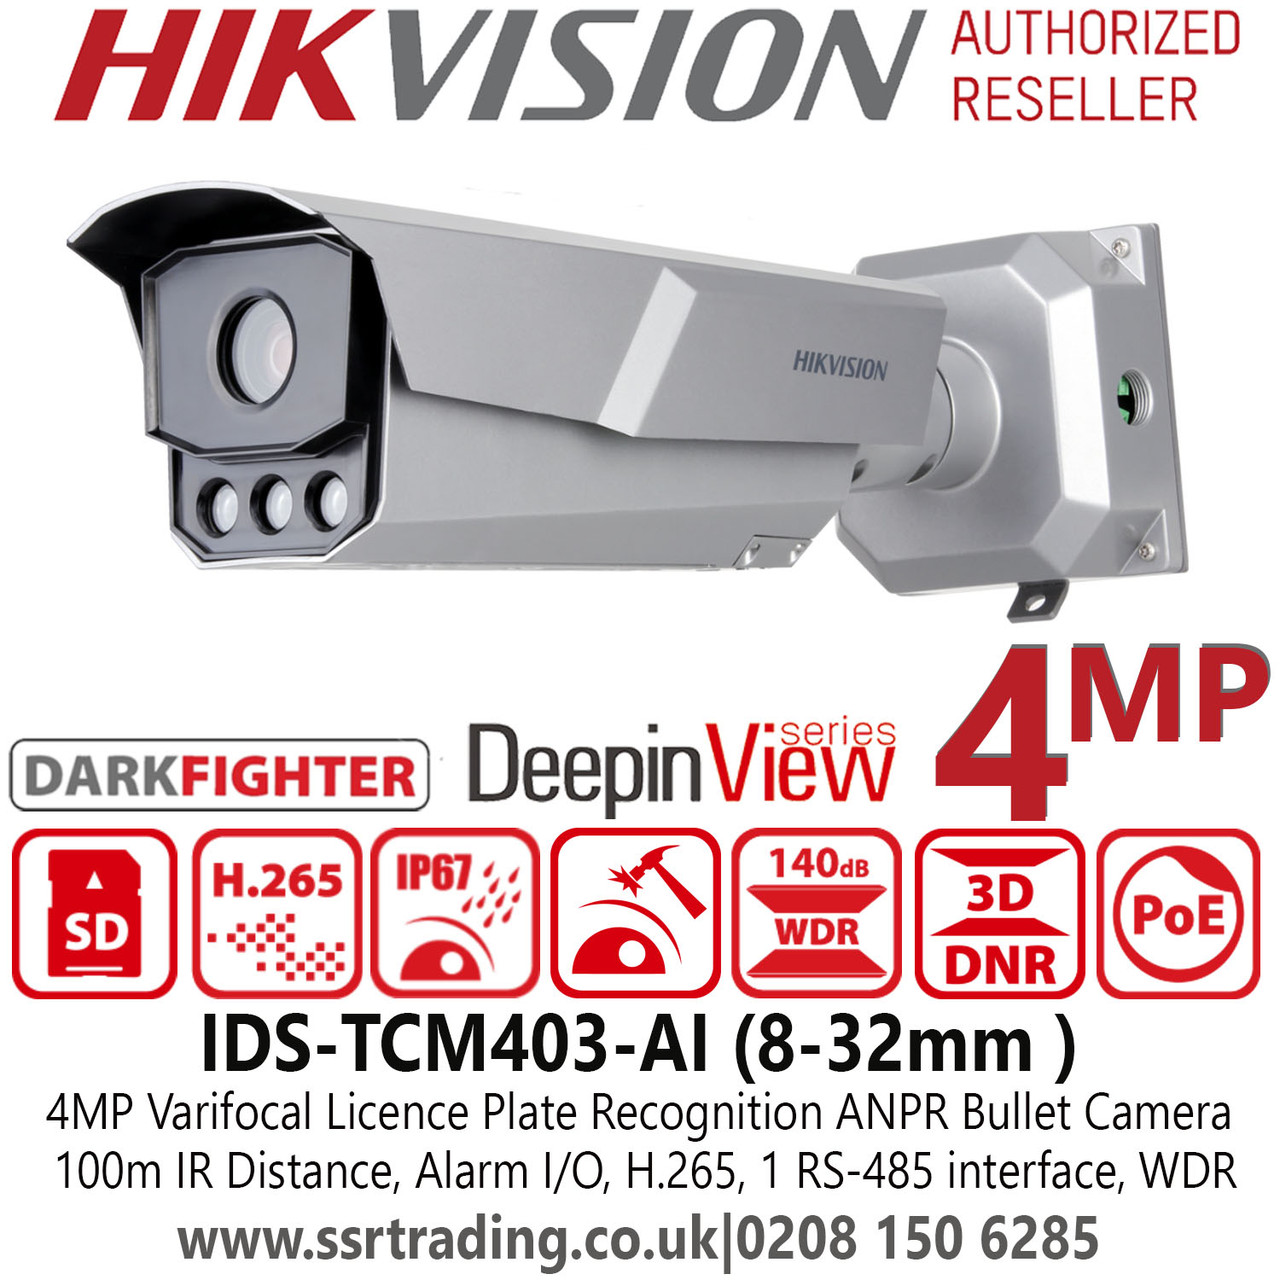 Hikvision 4MP Darkfighter Varifocal Lens Licence Plate Recognition ANPR  Bullet Camera - 100m IR Range - Alarm I/O - IDS-TCM403-AI (8-32mm)